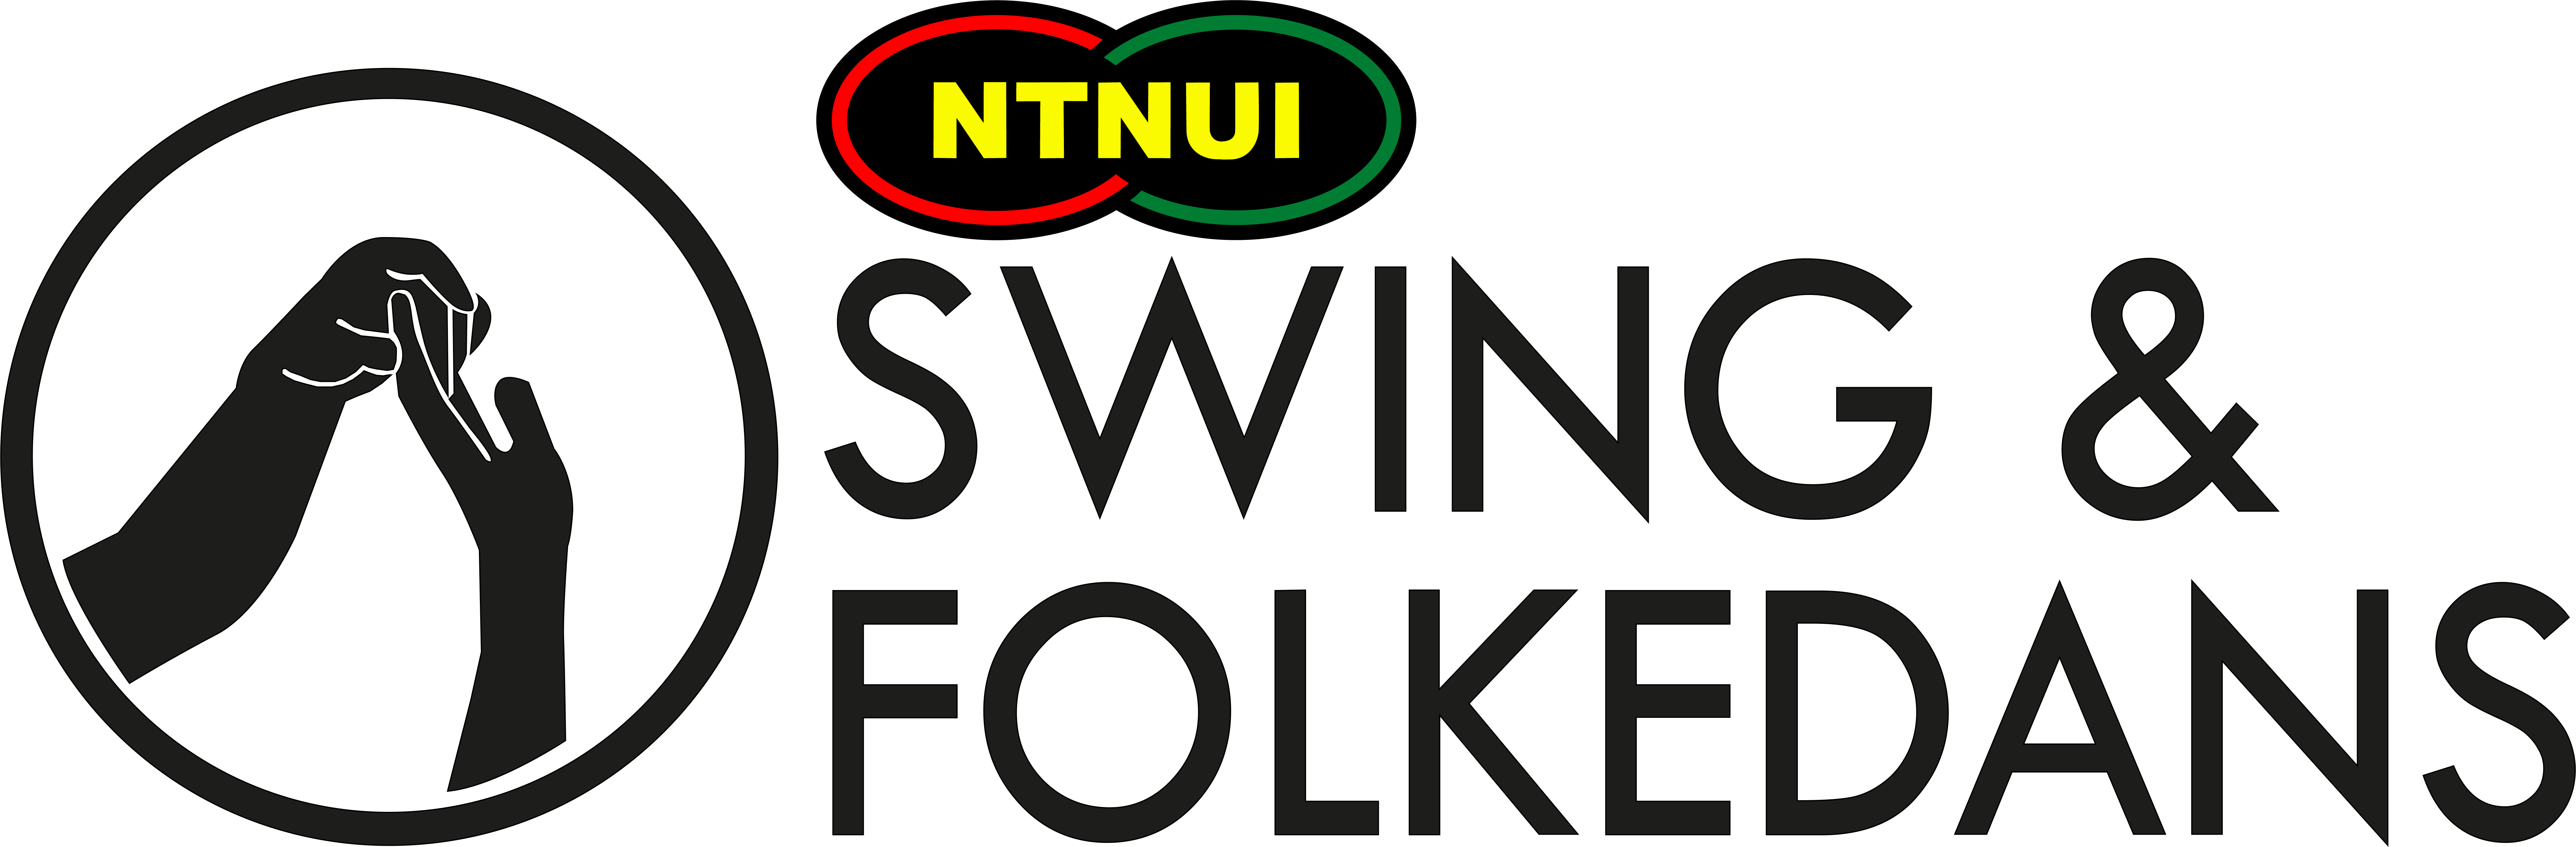 NTNUI Swing og Folkedans